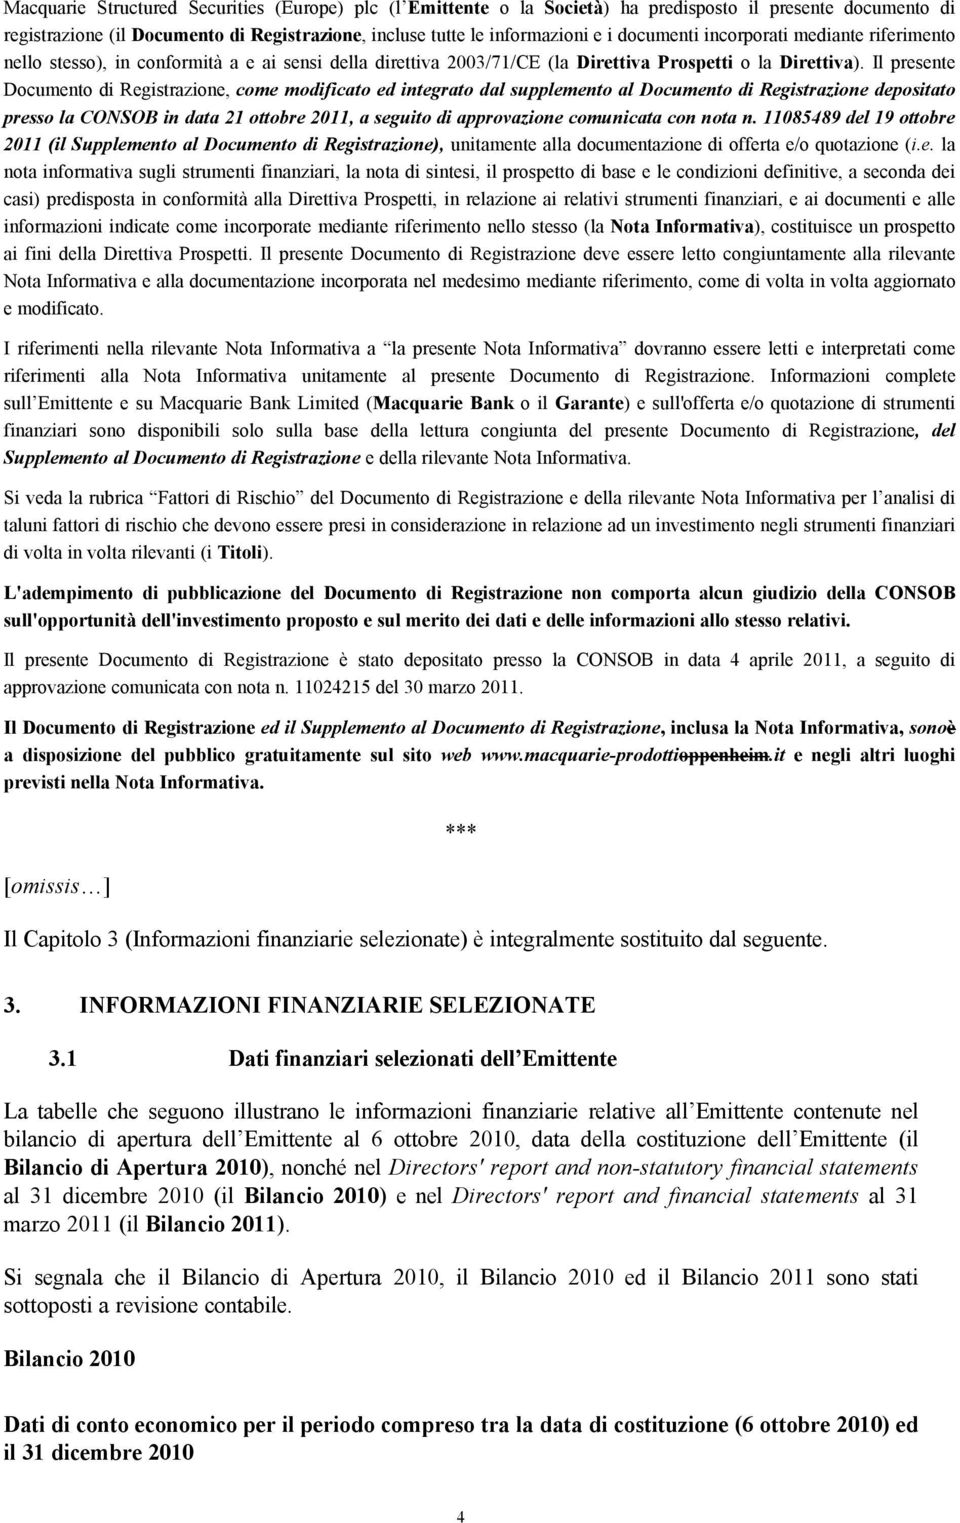 Il presente Documento di Registrazione, come modificato ed integrato dal supplemento al Documento di Registrazione depositato presso la CONSOB in data 21 ottobre 2011, a seguito di approvazione